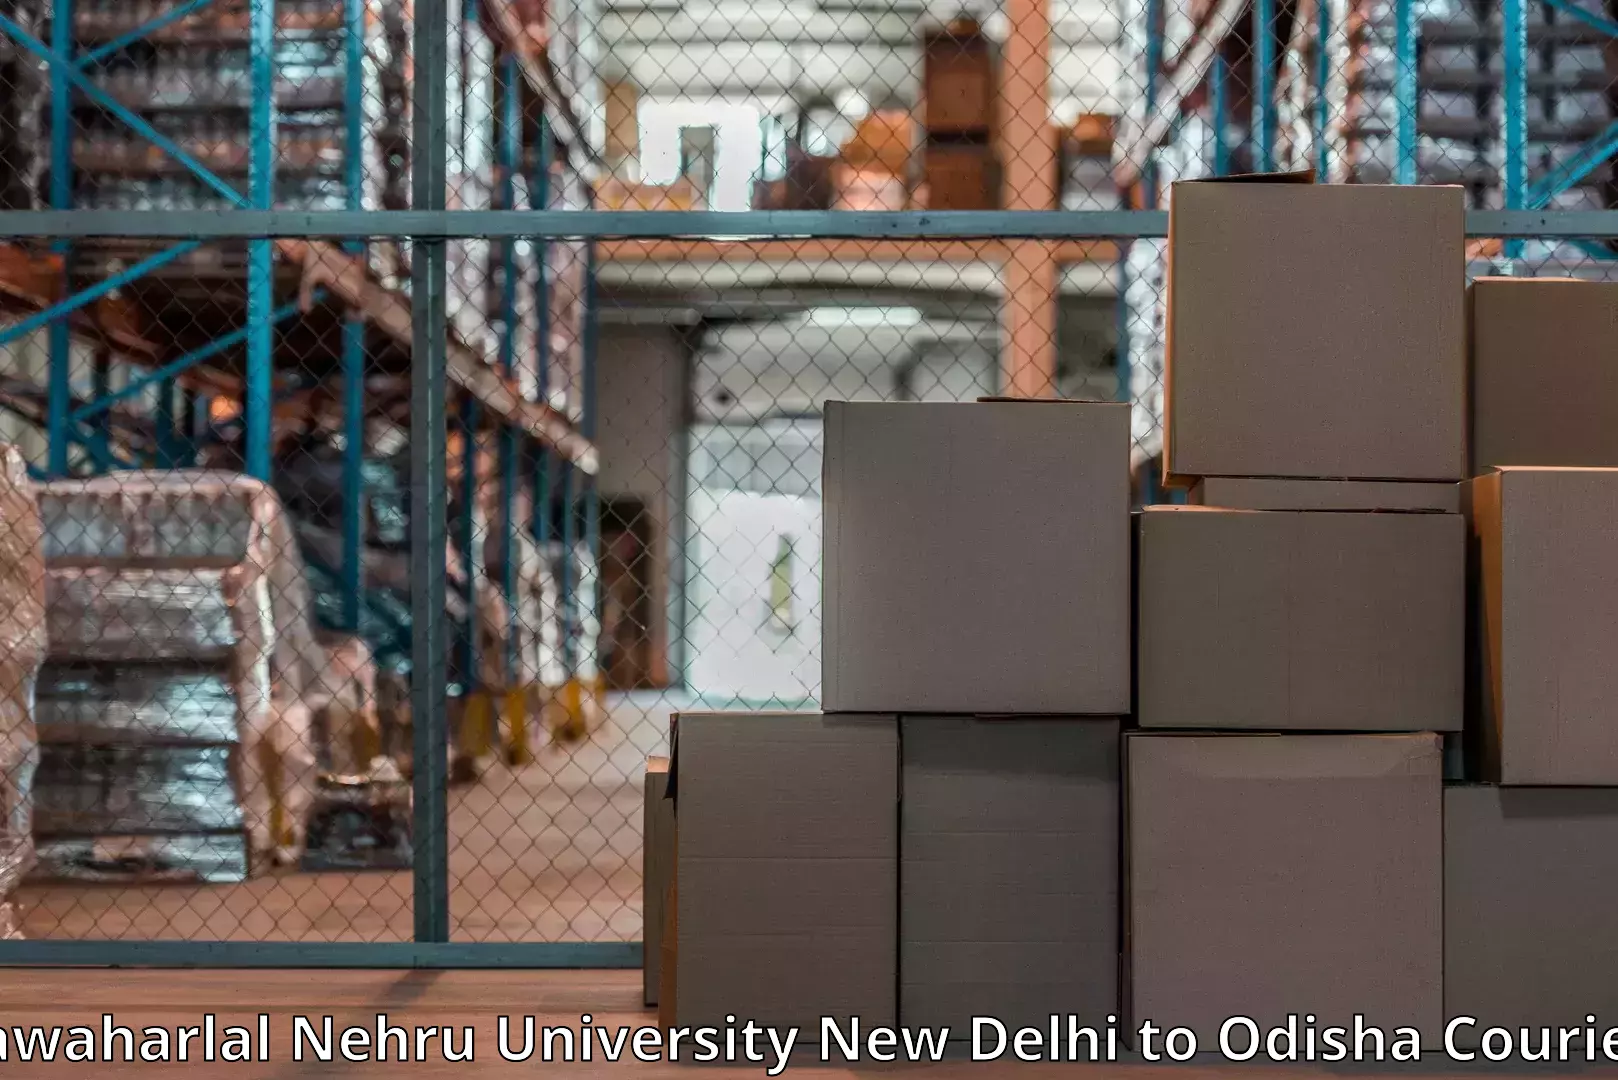 Door-to-door relocation services Jawaharlal Nehru University New Delhi to Odisha